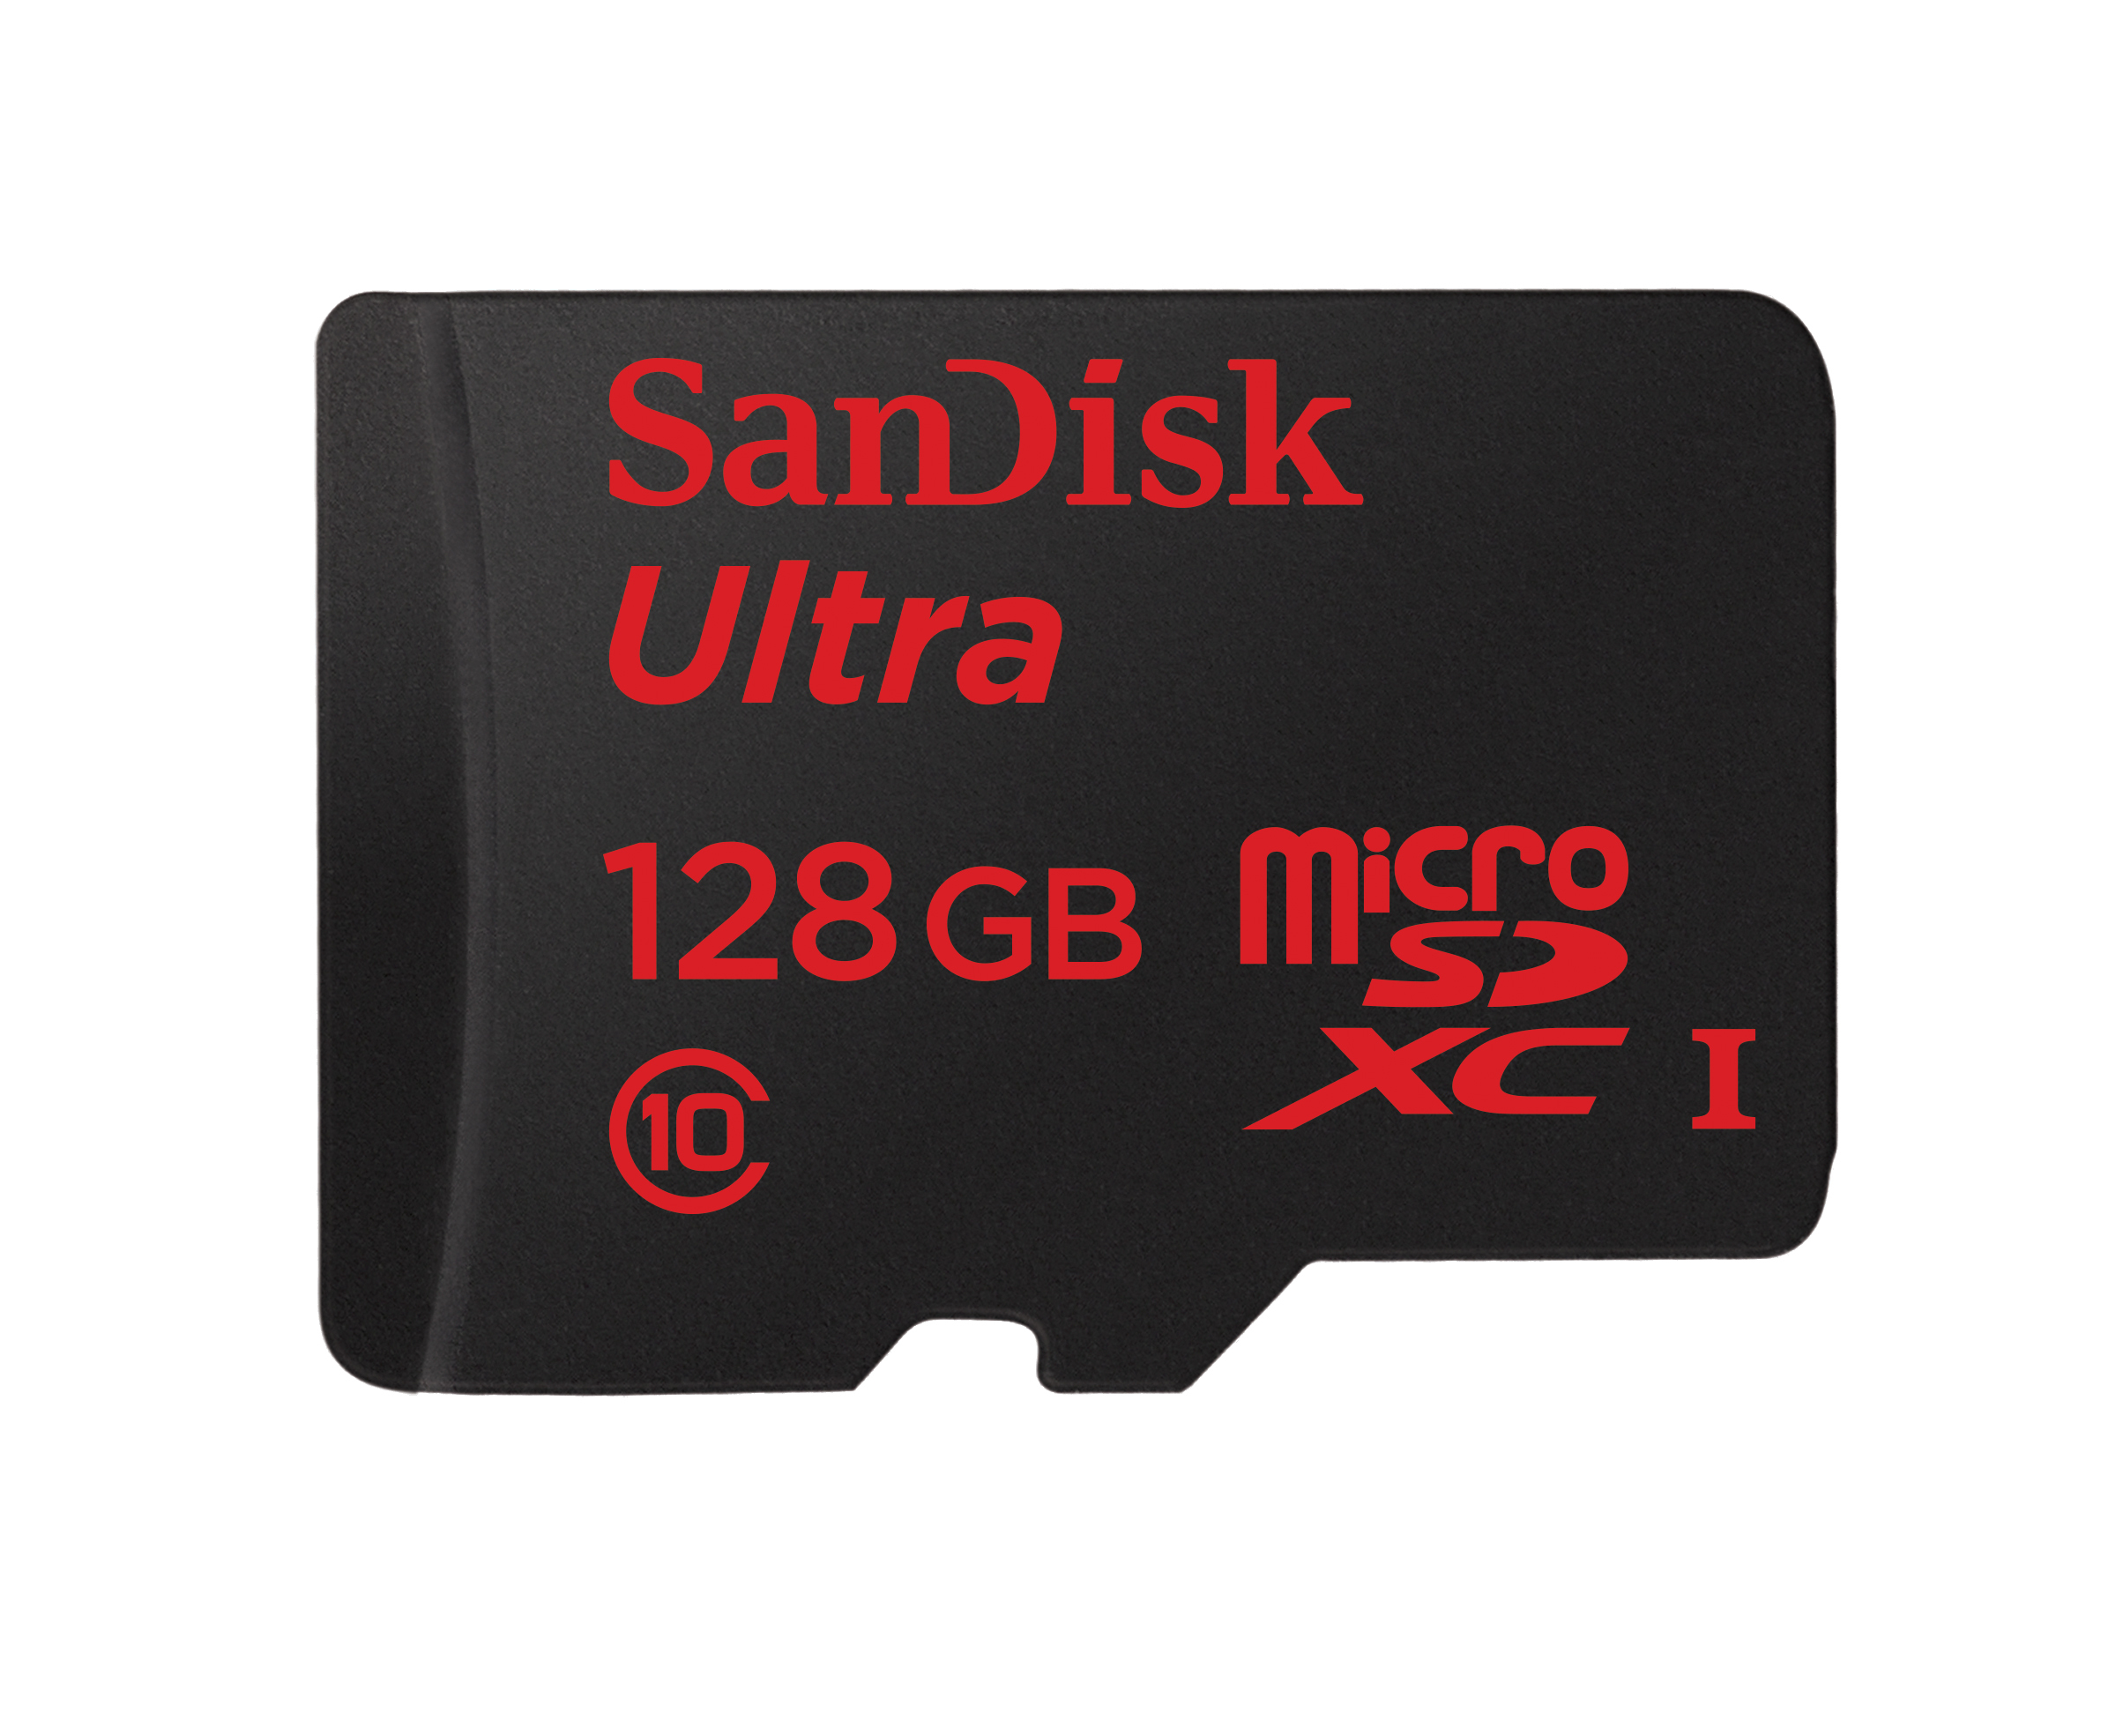 Media asset in full size related to 3dfxzone.it news item entitled as follows: SanDisk annuncia la prima microSD al mondo con capacit di 128GB | Image Name: news20826_SanDisk-Ultra-microSDXC-UHS-I-128GB_1.jpg